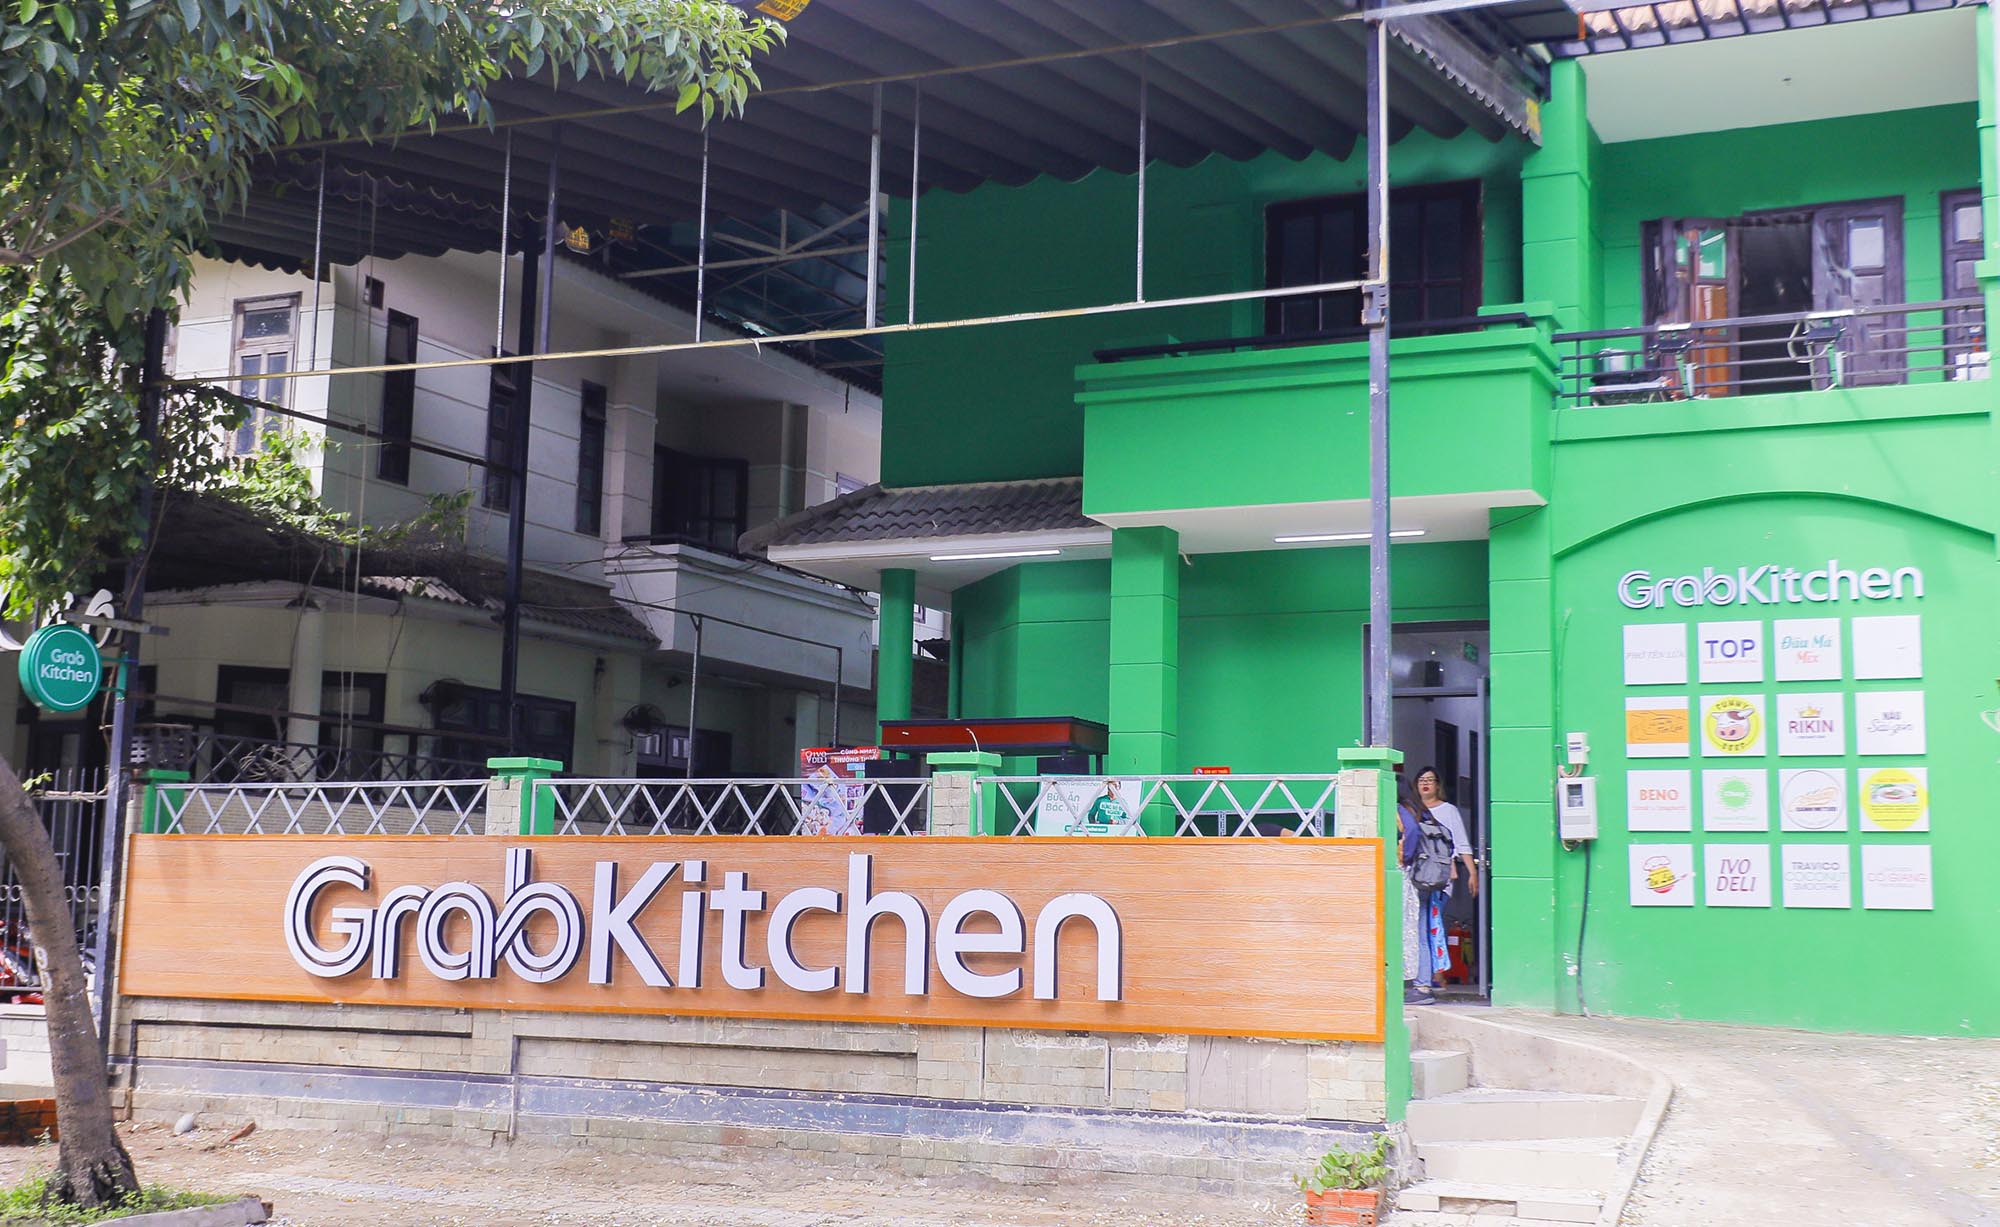 Grab mở rộng mạng lưới GrabKitchen, tiếp tục nâng cao tiêu chuẩn ATTP cho ngành dịch vụ giao nhận thức ăn trực tuyến